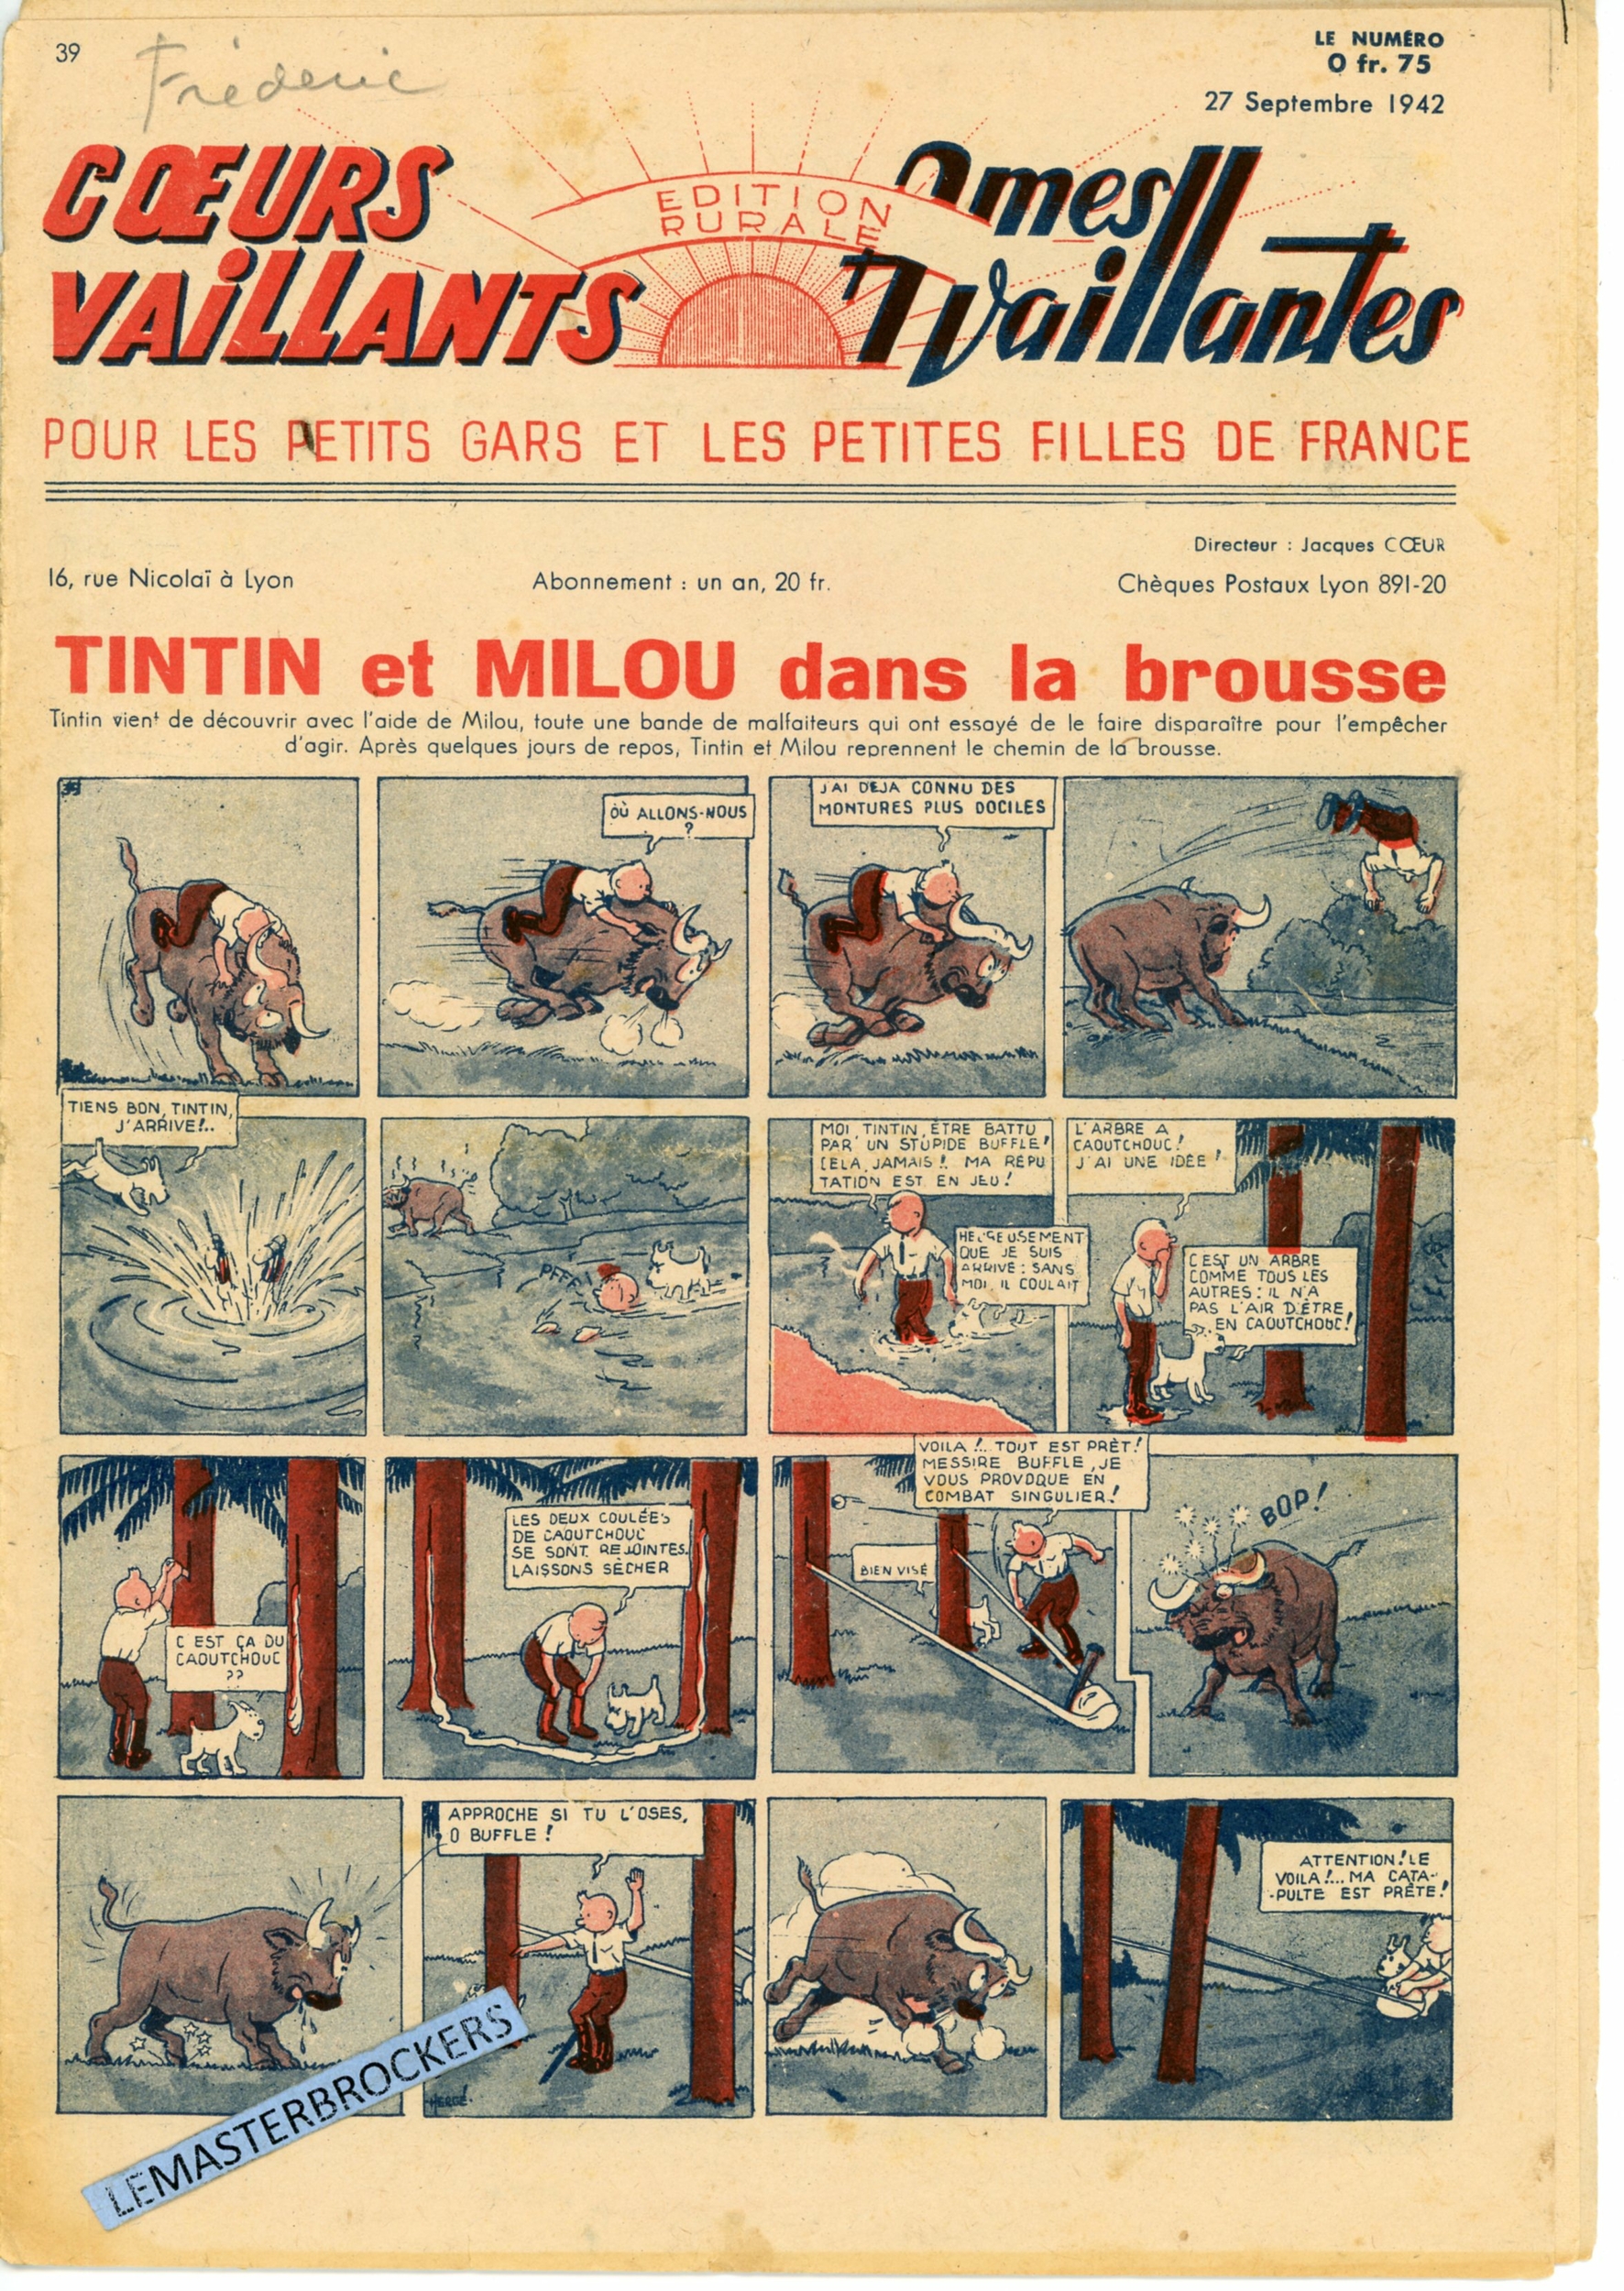 TINTIN ET MILOU DANS LA BROUSSE - COEURS VAILLANTS N° 39 - SUPPLÉMENT BIMENSUEL 1942